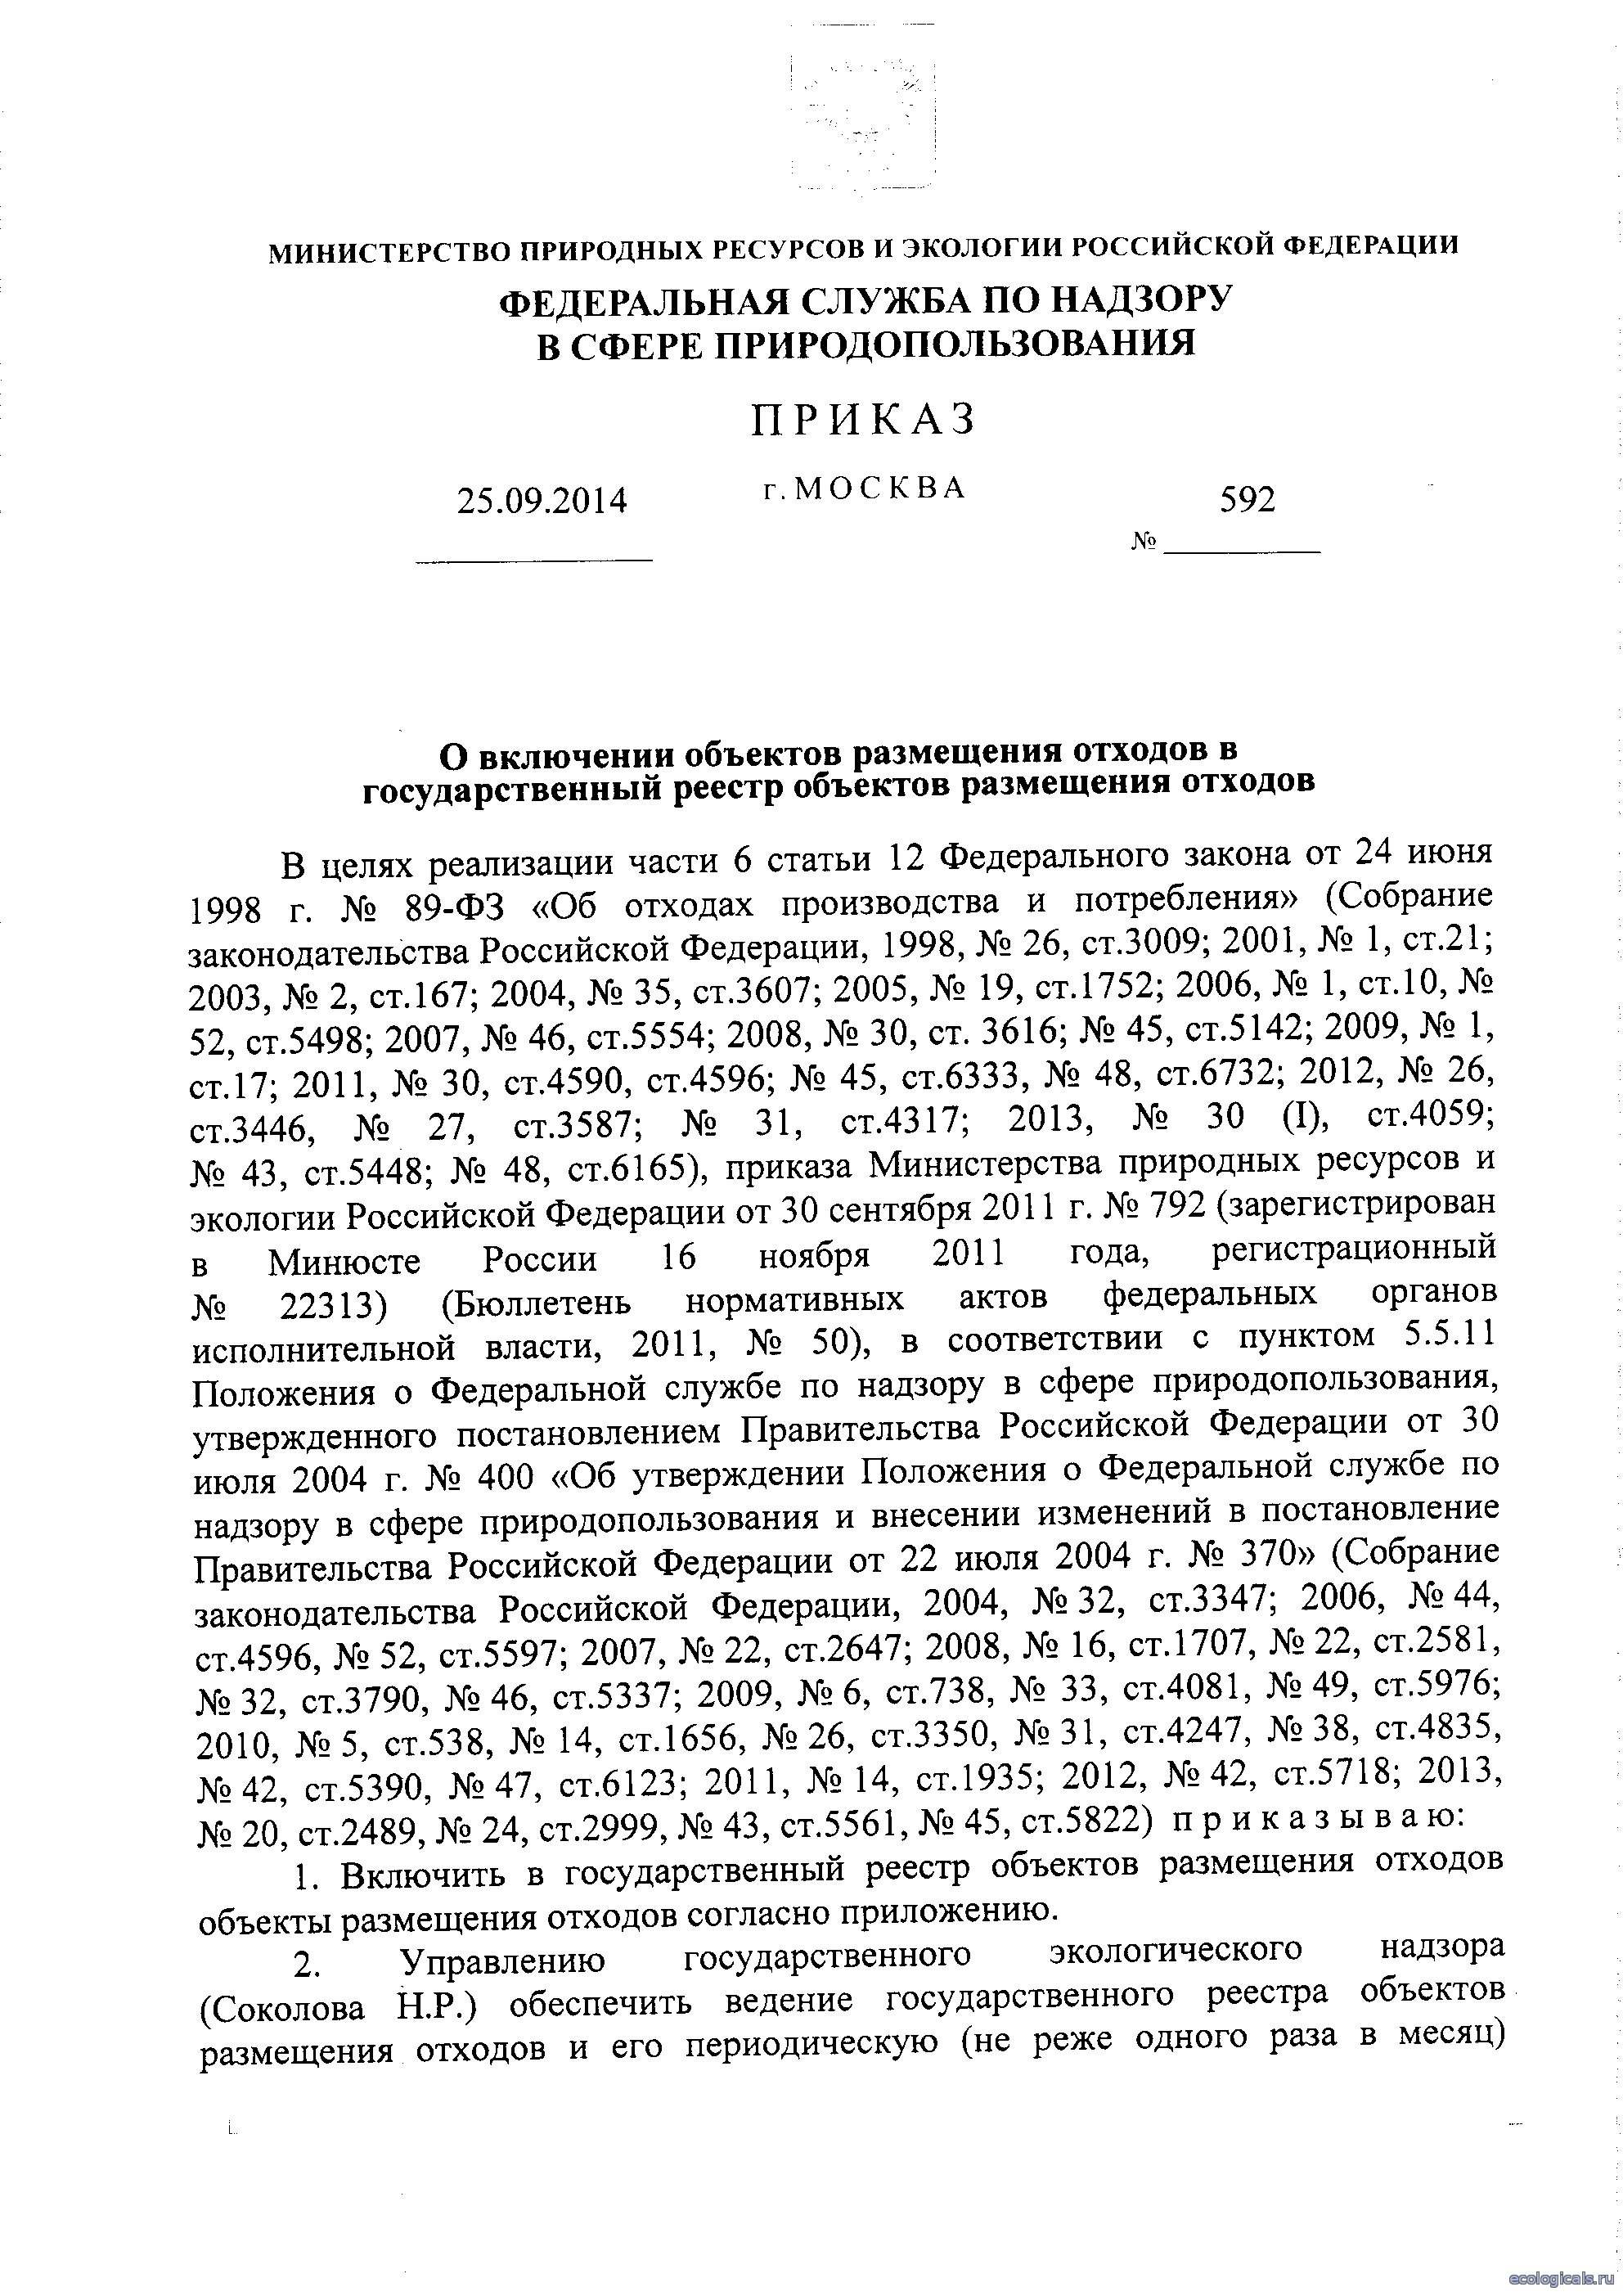 Приказ Росприроднадзора №592 от 25.09.2014